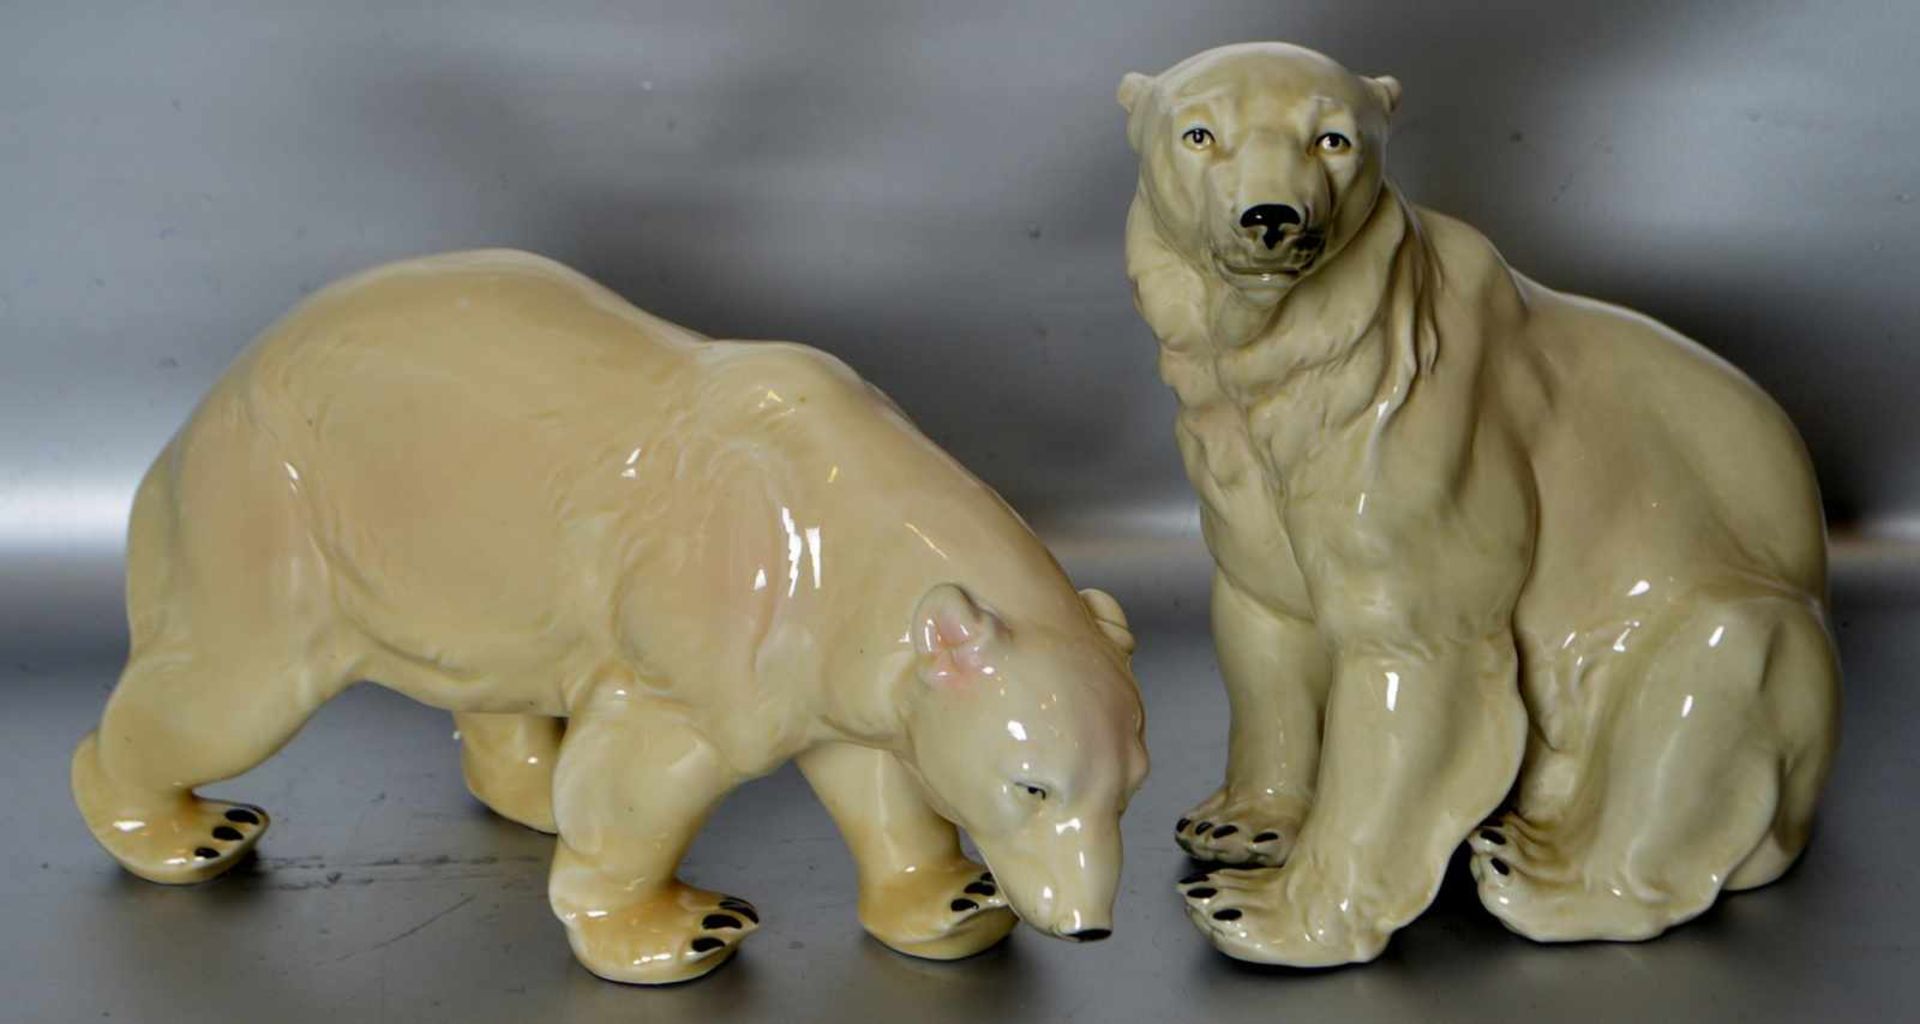 Eisbärenpaarstehend bzw. sitzend, bunt bemalt, H ca. 23 cm, L ca. 30 cm, FM